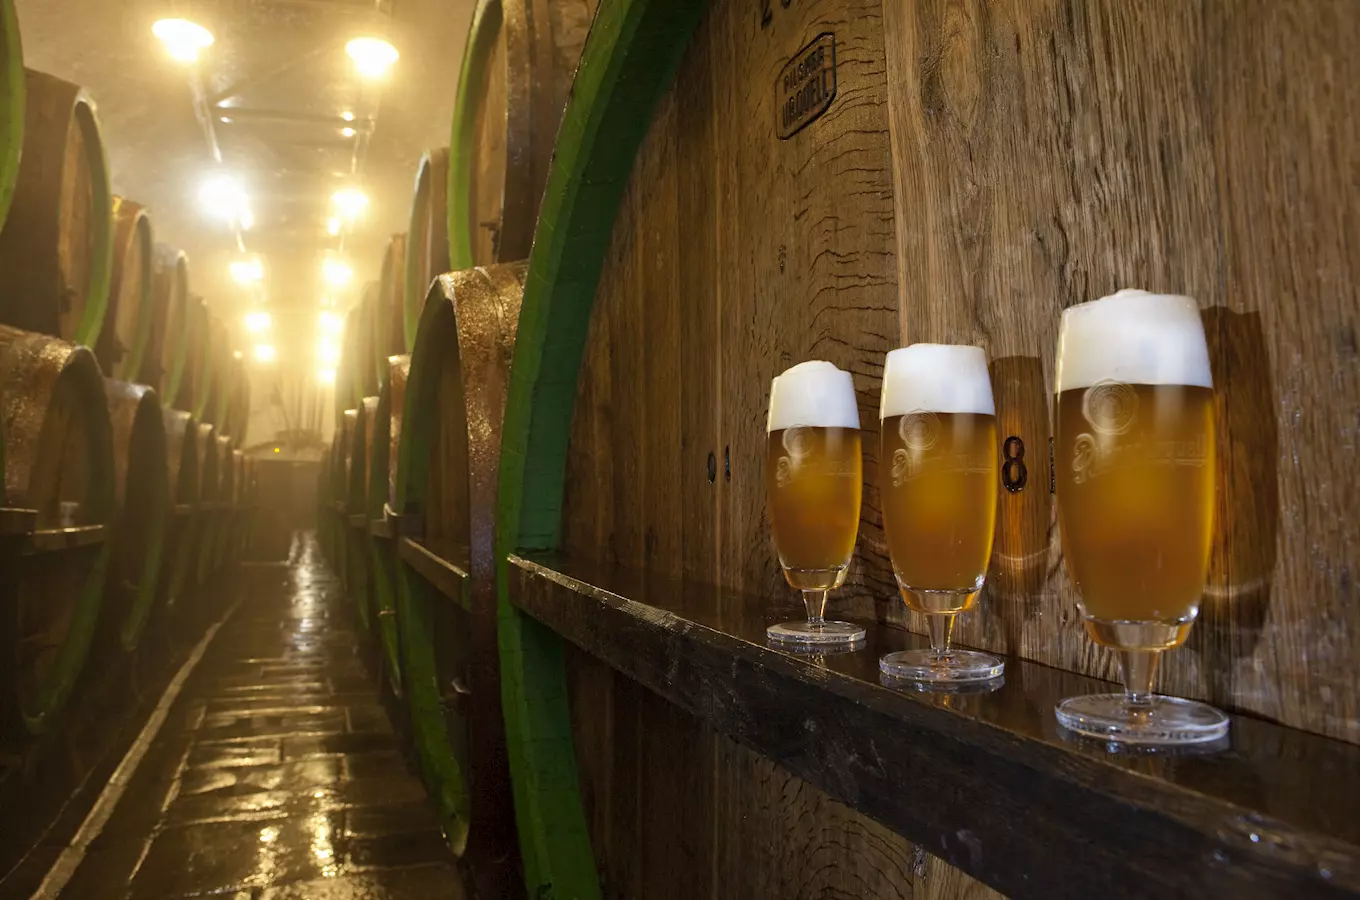 Plzeňské pivovary - největší prodejce piva v České republice